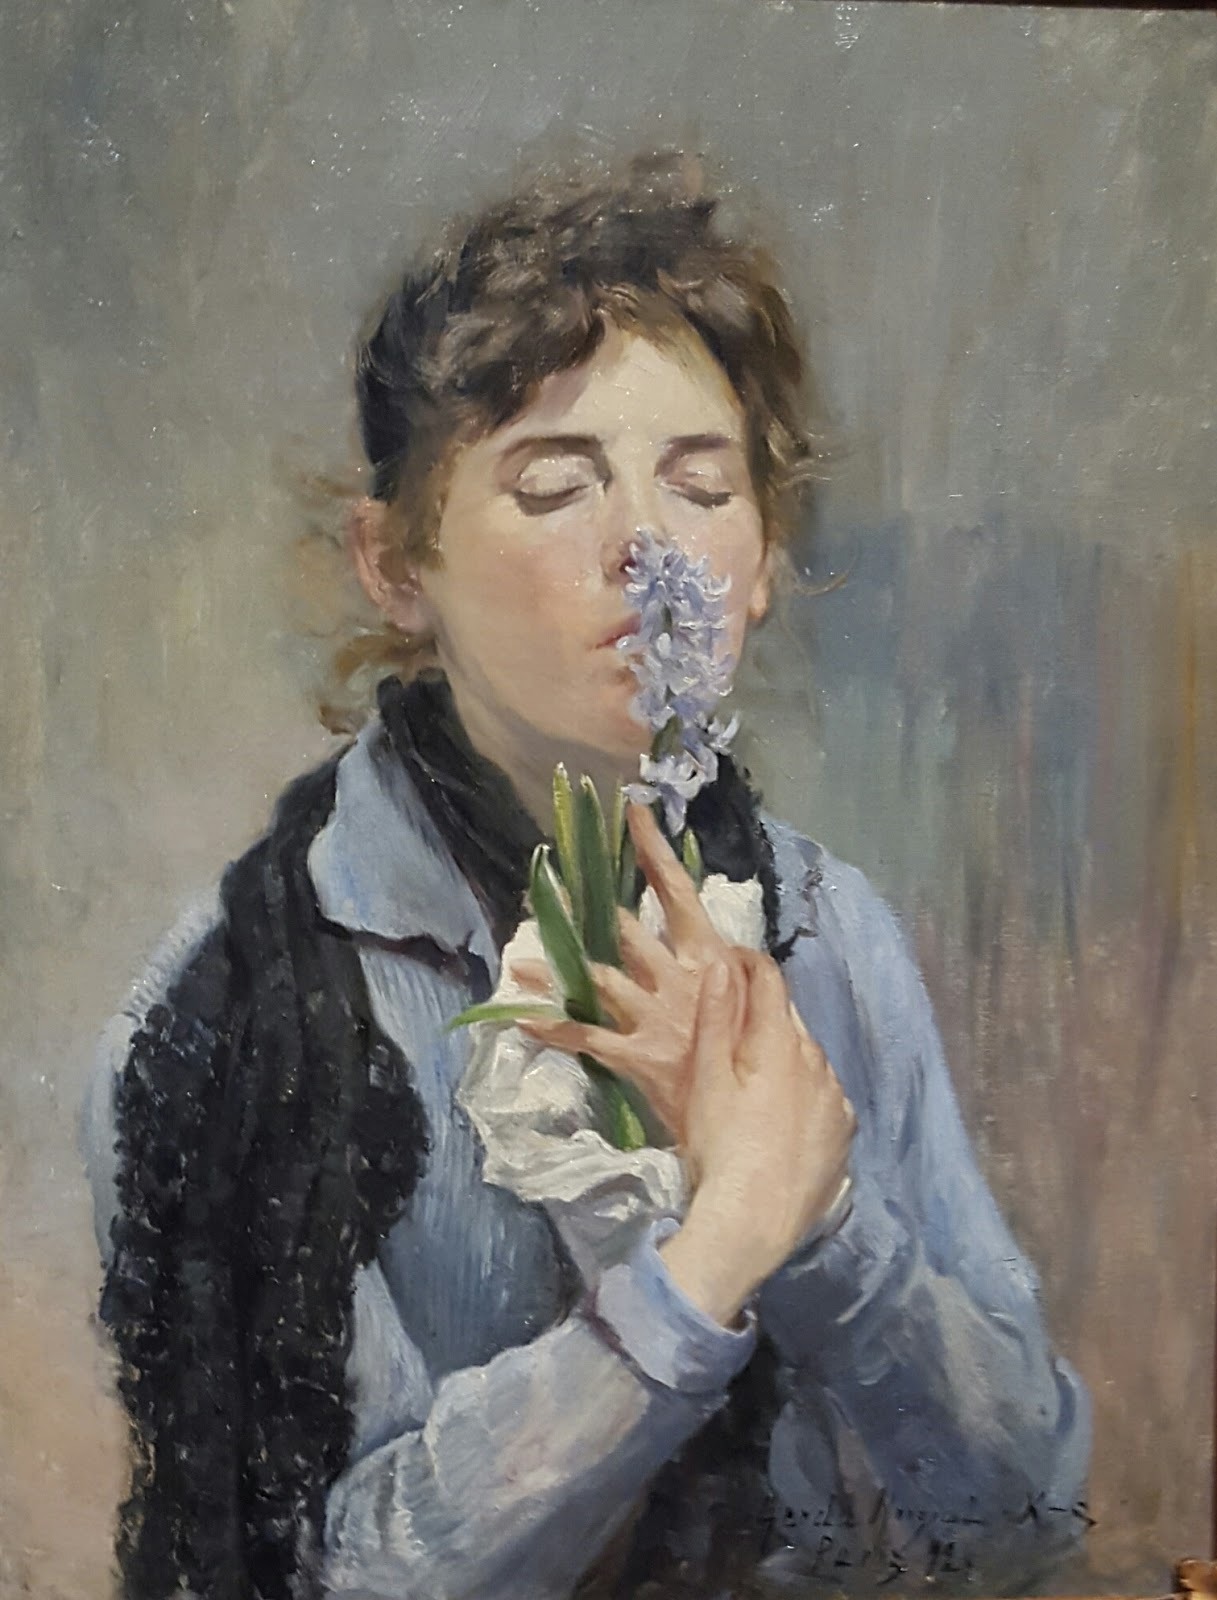 Une Jacinthe Bleue à Paris. Autoportrait. by Gerda Roosval-Kallstenius - 1892 - 66 x 51,5 cm collection privée